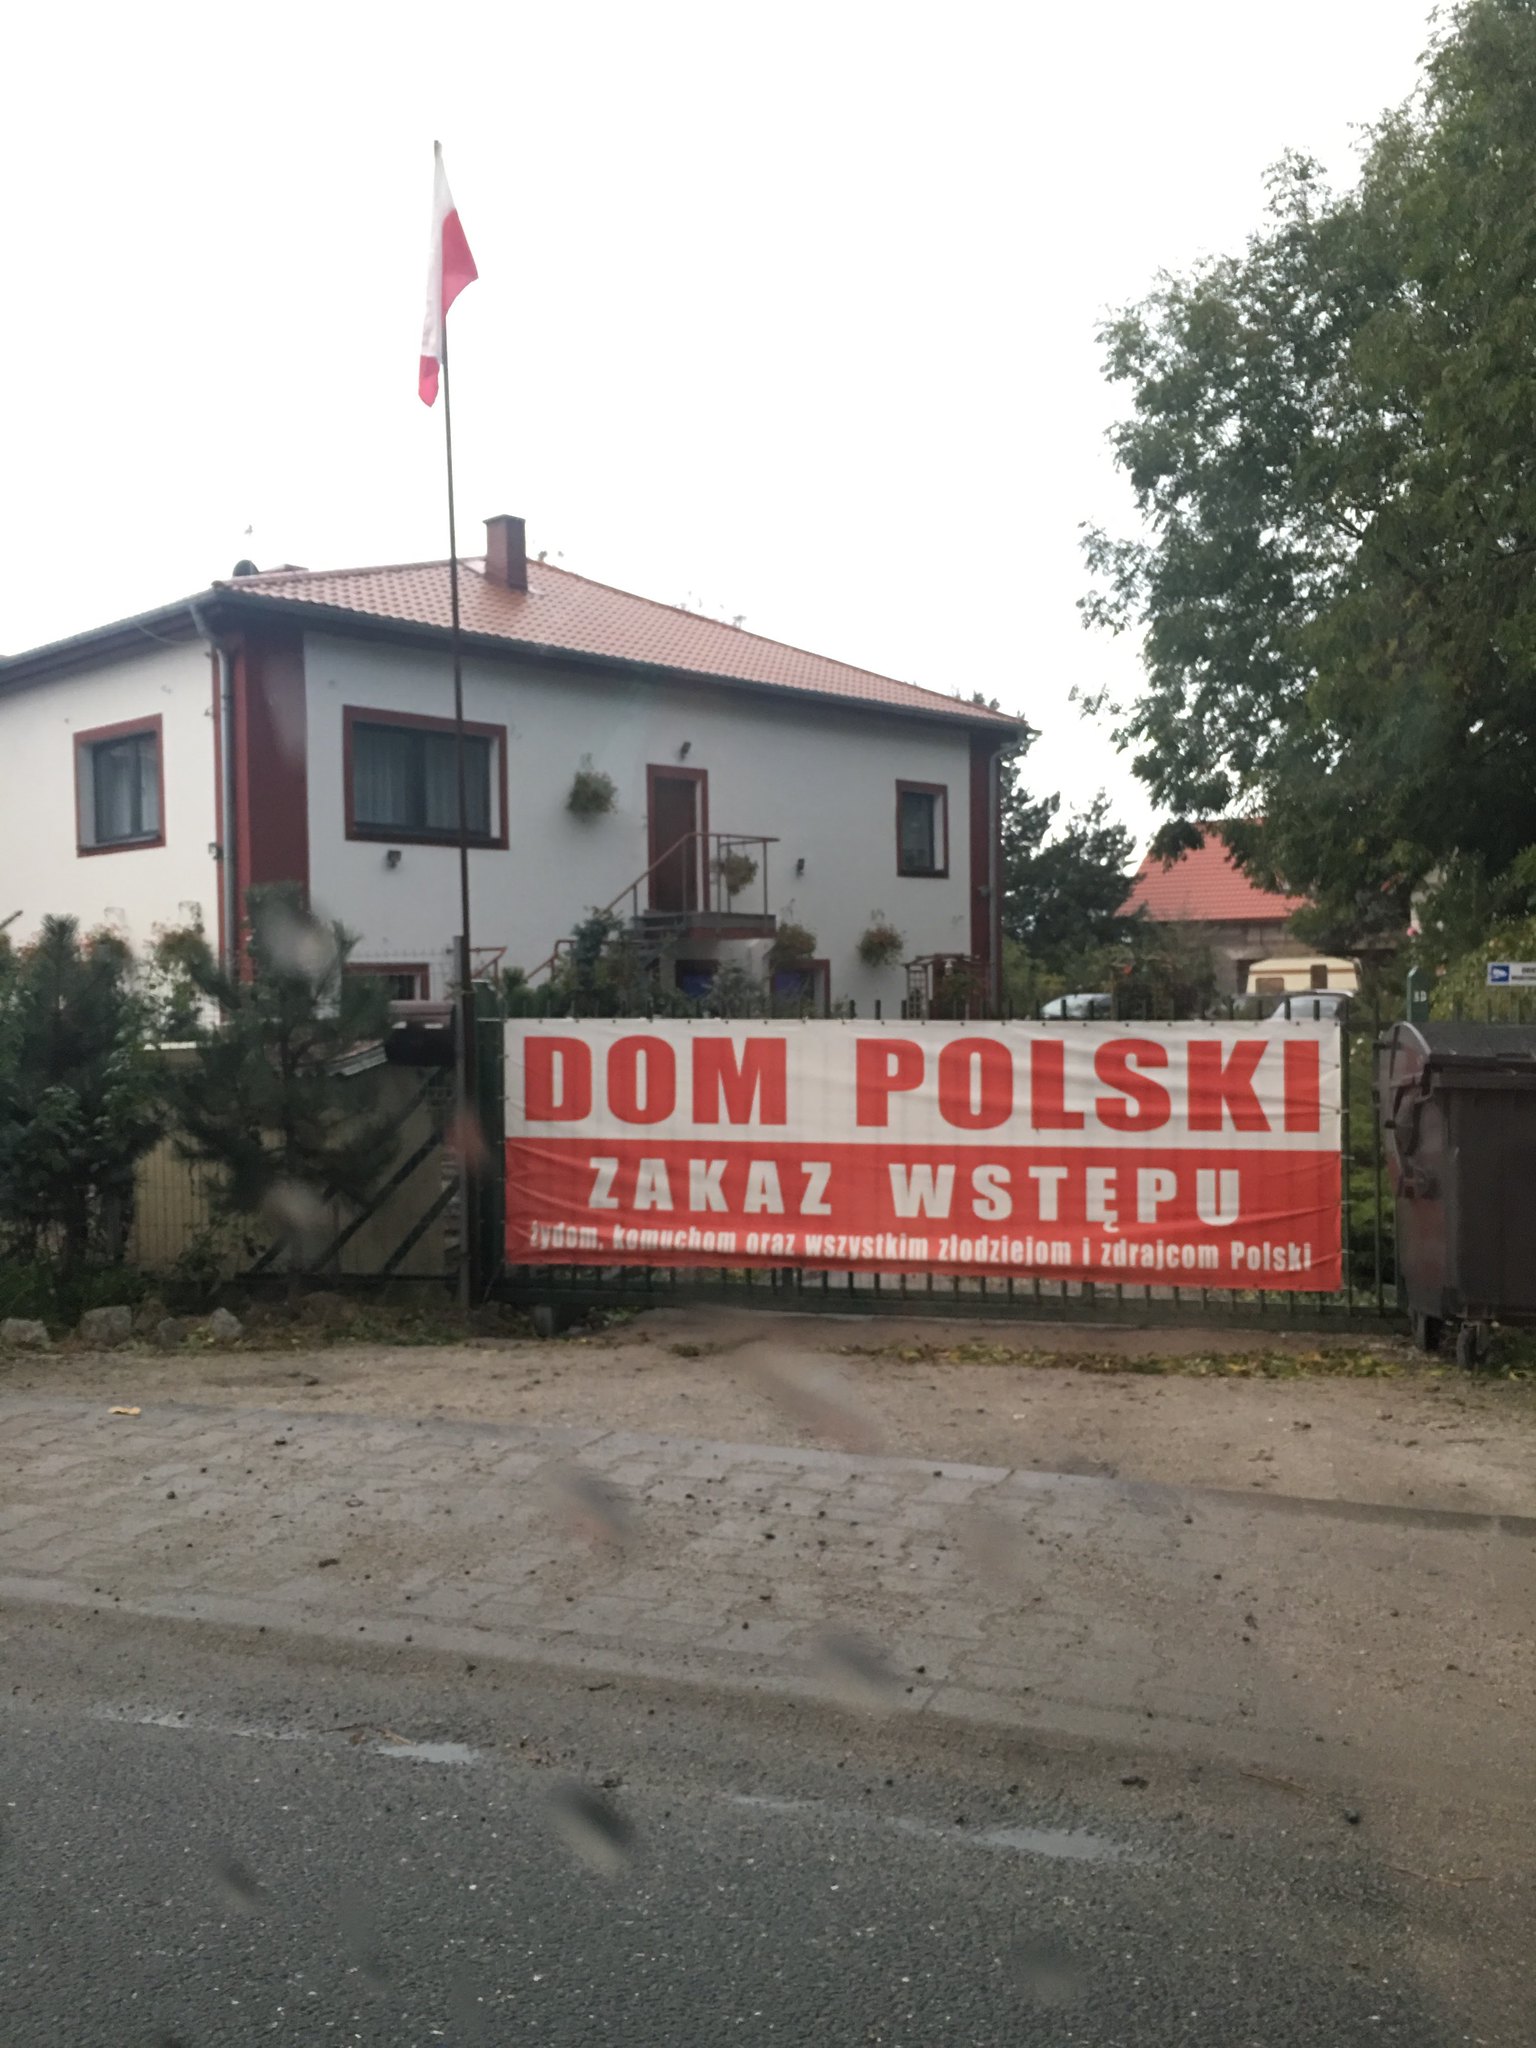 dom polski